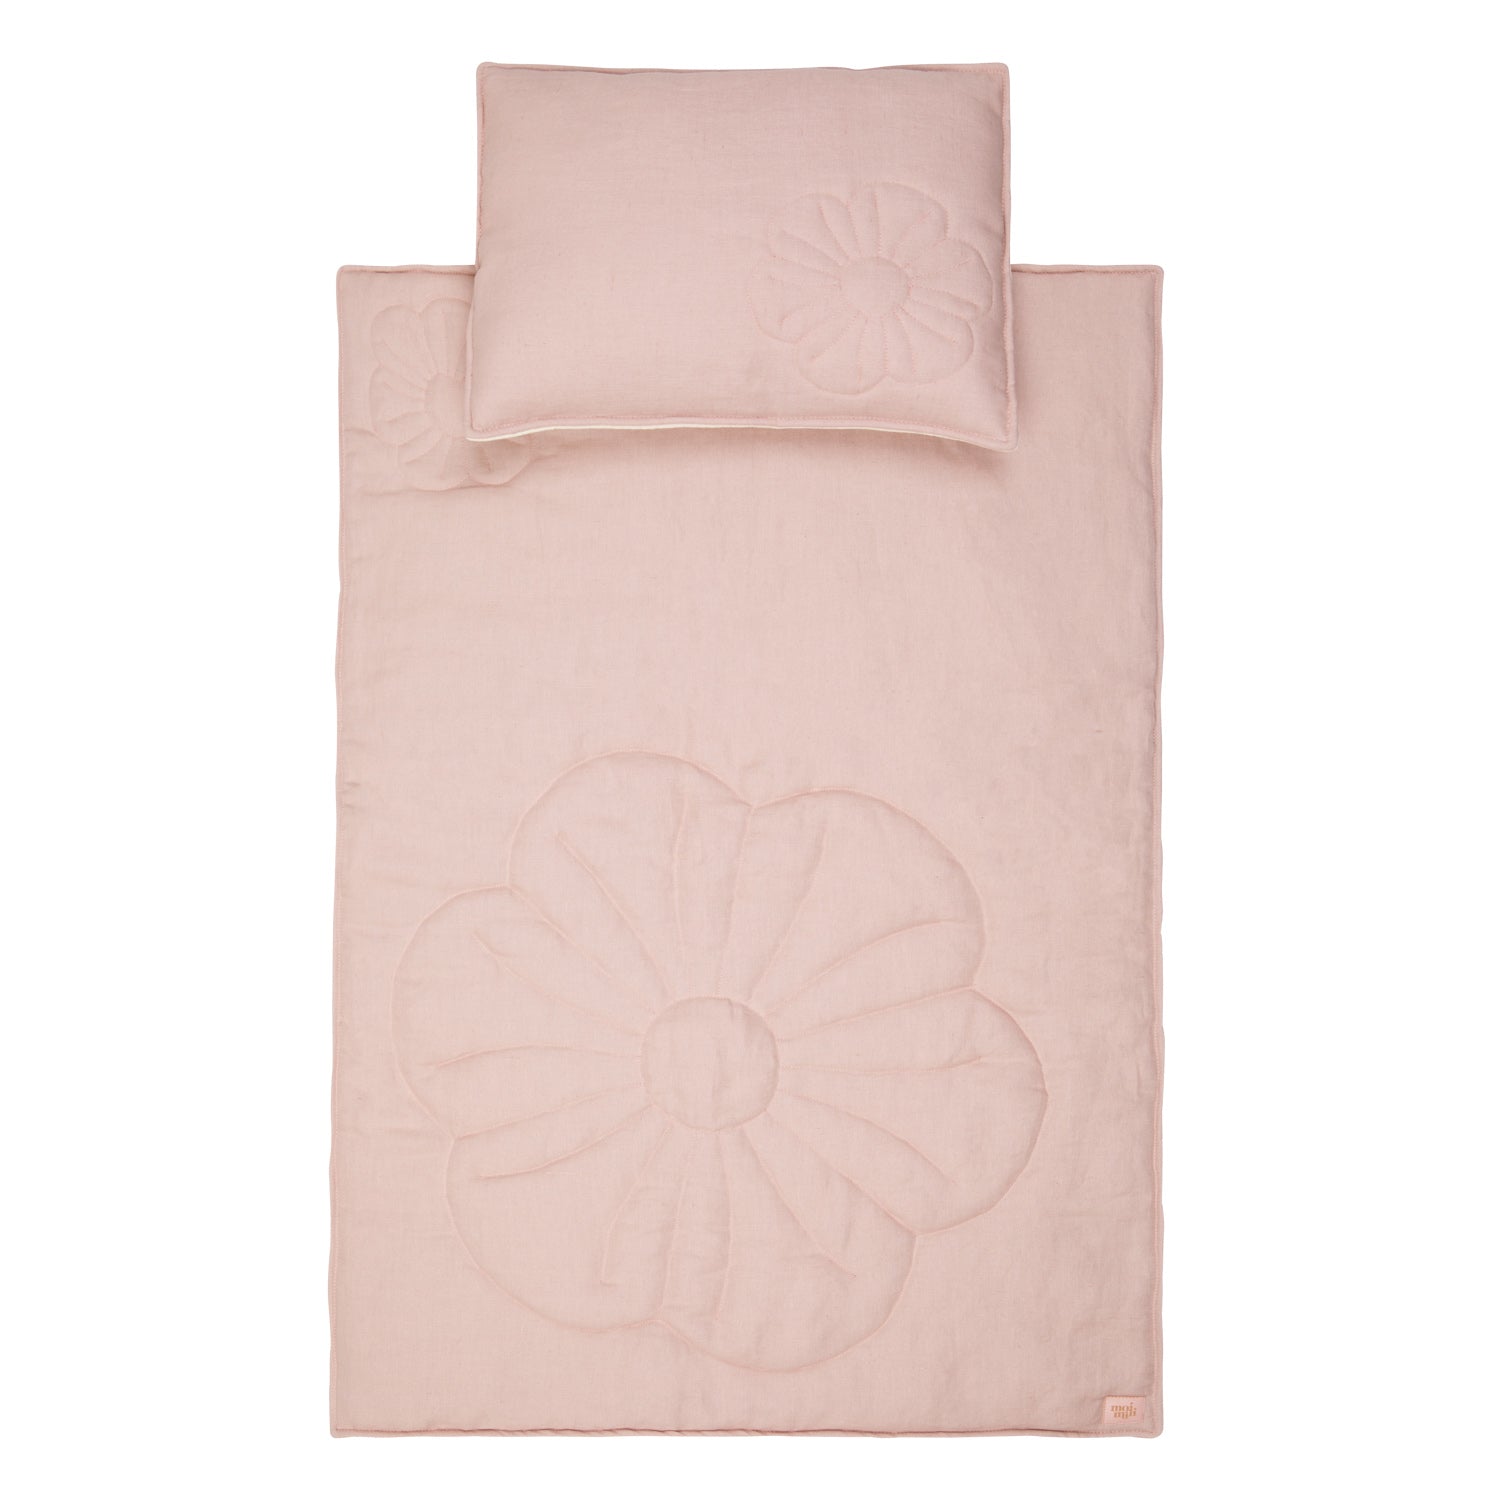 moimili Bettwäscheset Puderrosa Leinenblüte für Kinder - Eine gemütliche Bettwäsche in Puderrosa mit Leinenblüten-Muster für glückliche Kinder